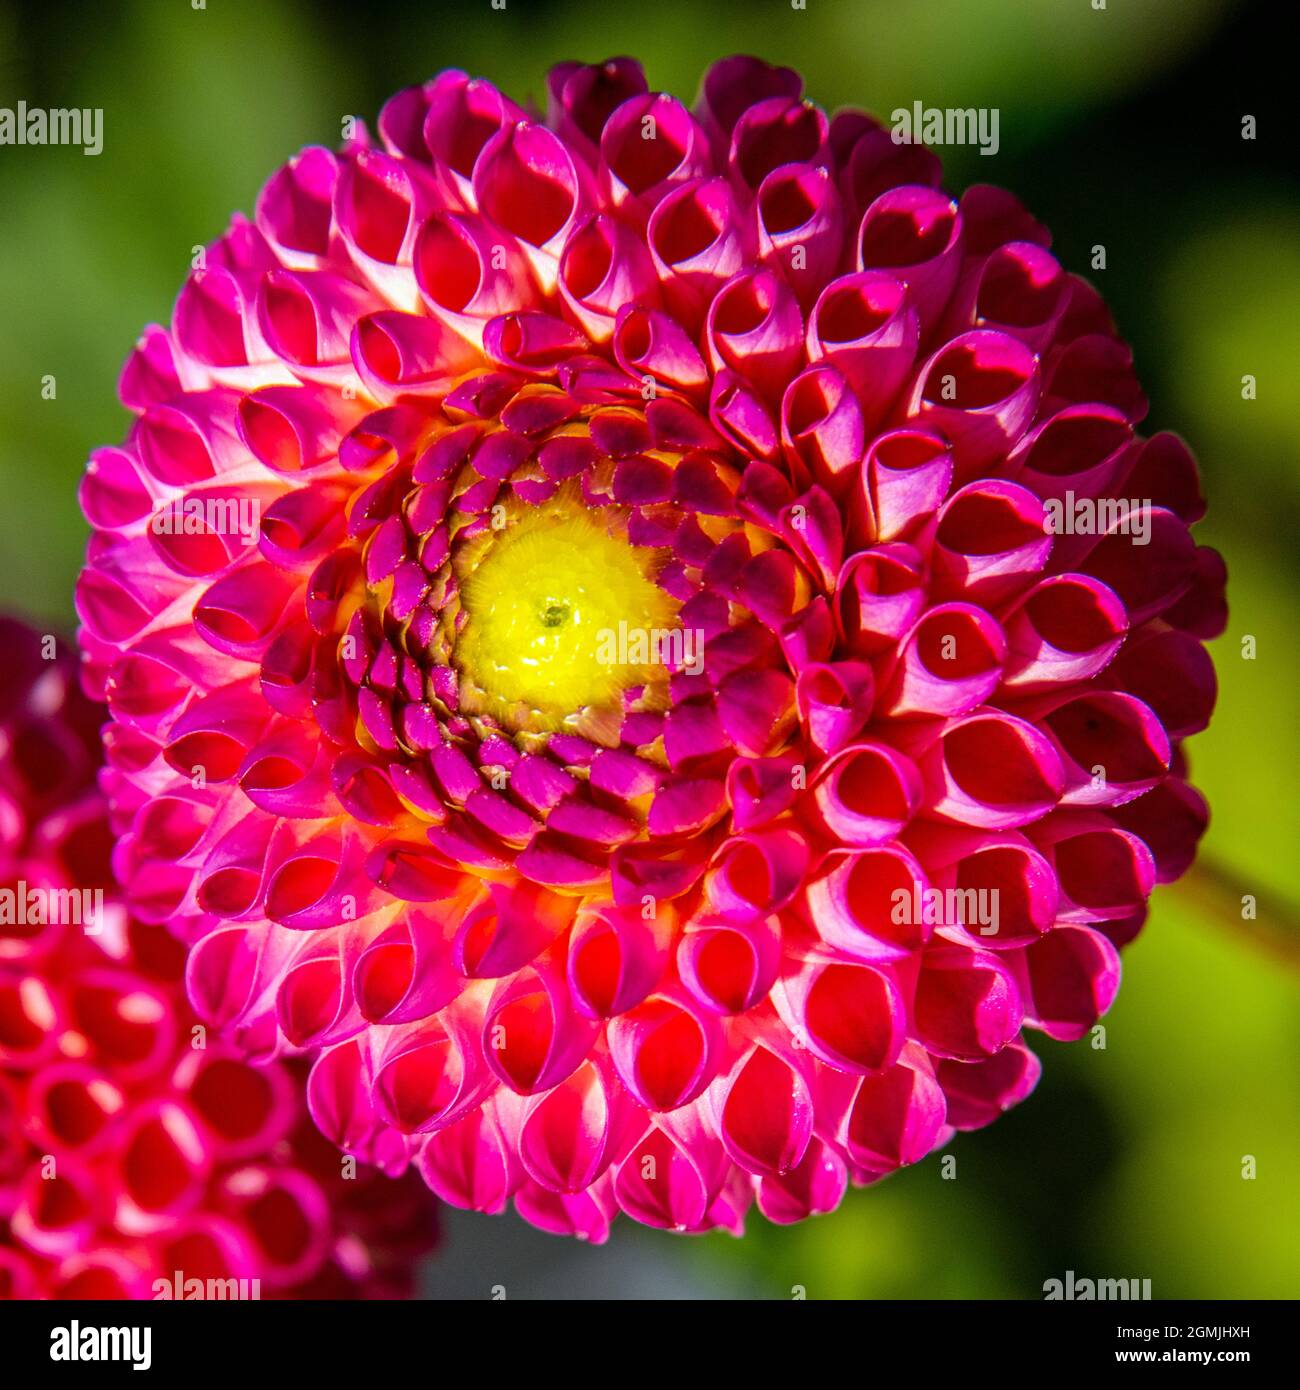 Tête de fleur ronde avec alvéoles de couleurs rose et jaune et motif géométrique parfait Banque D'Images